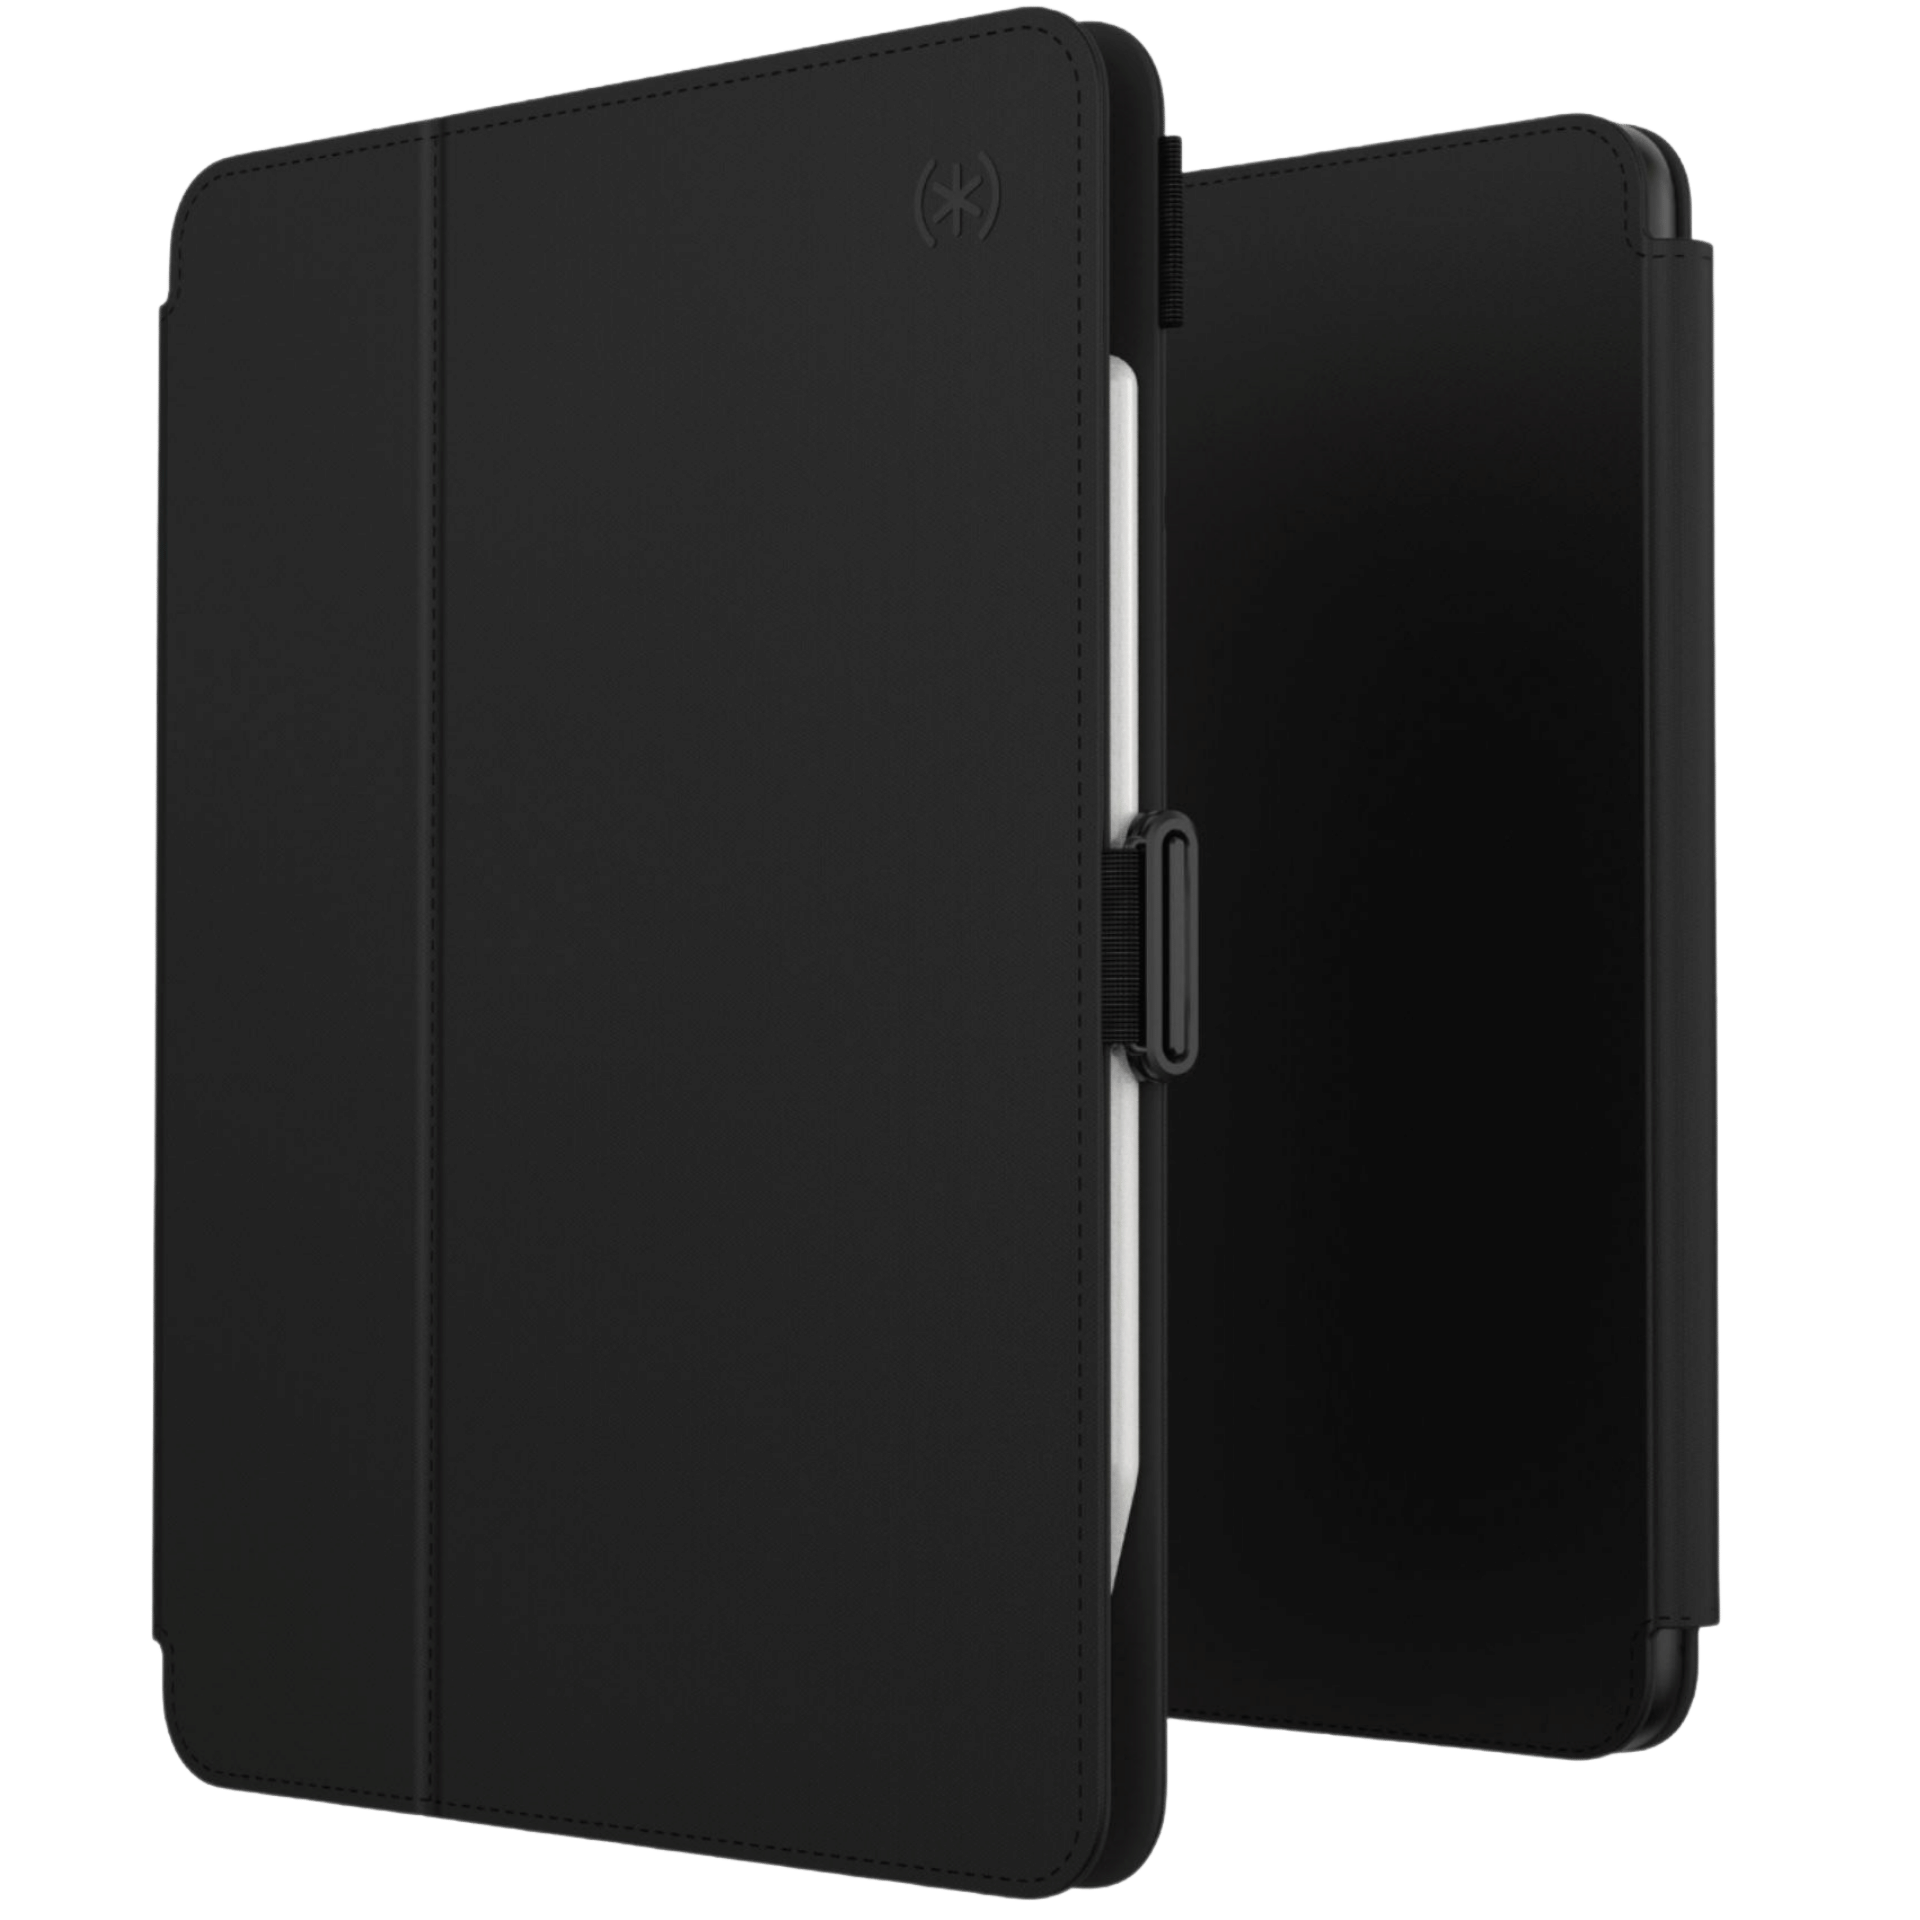 iPad Air 5 için Speck Balance Folio Ürün Resmi